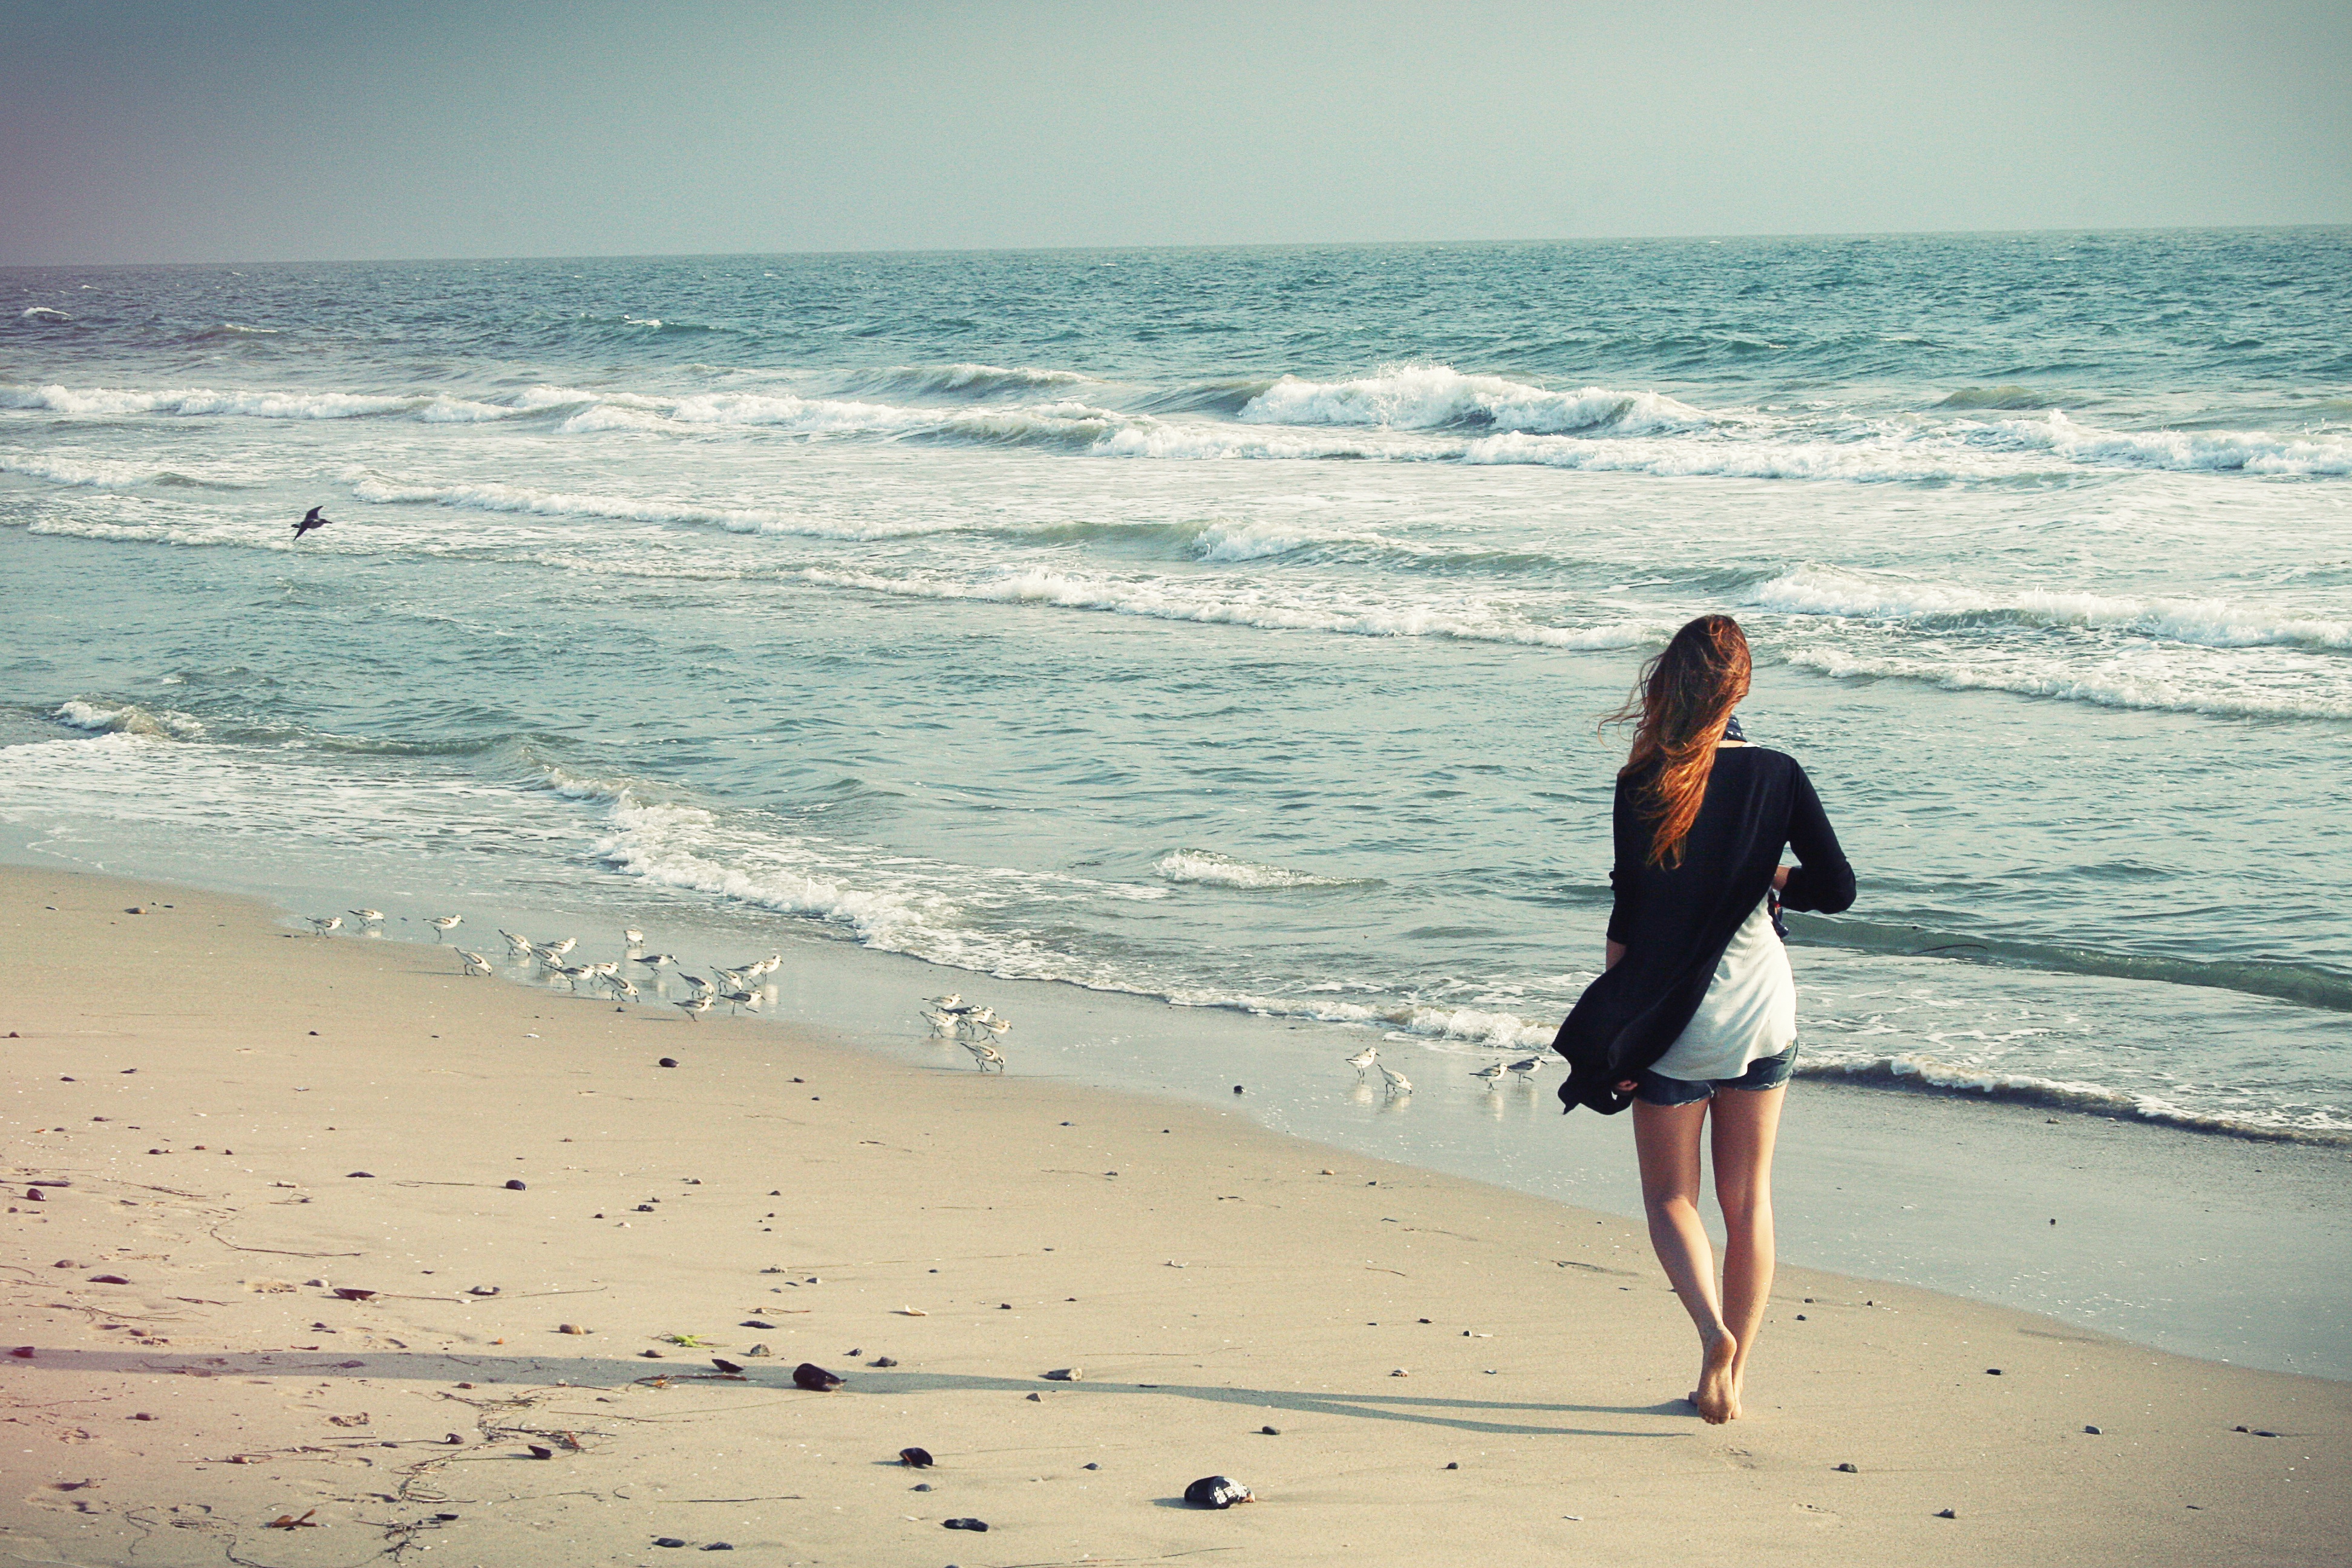 A girl walks on a sandy beach